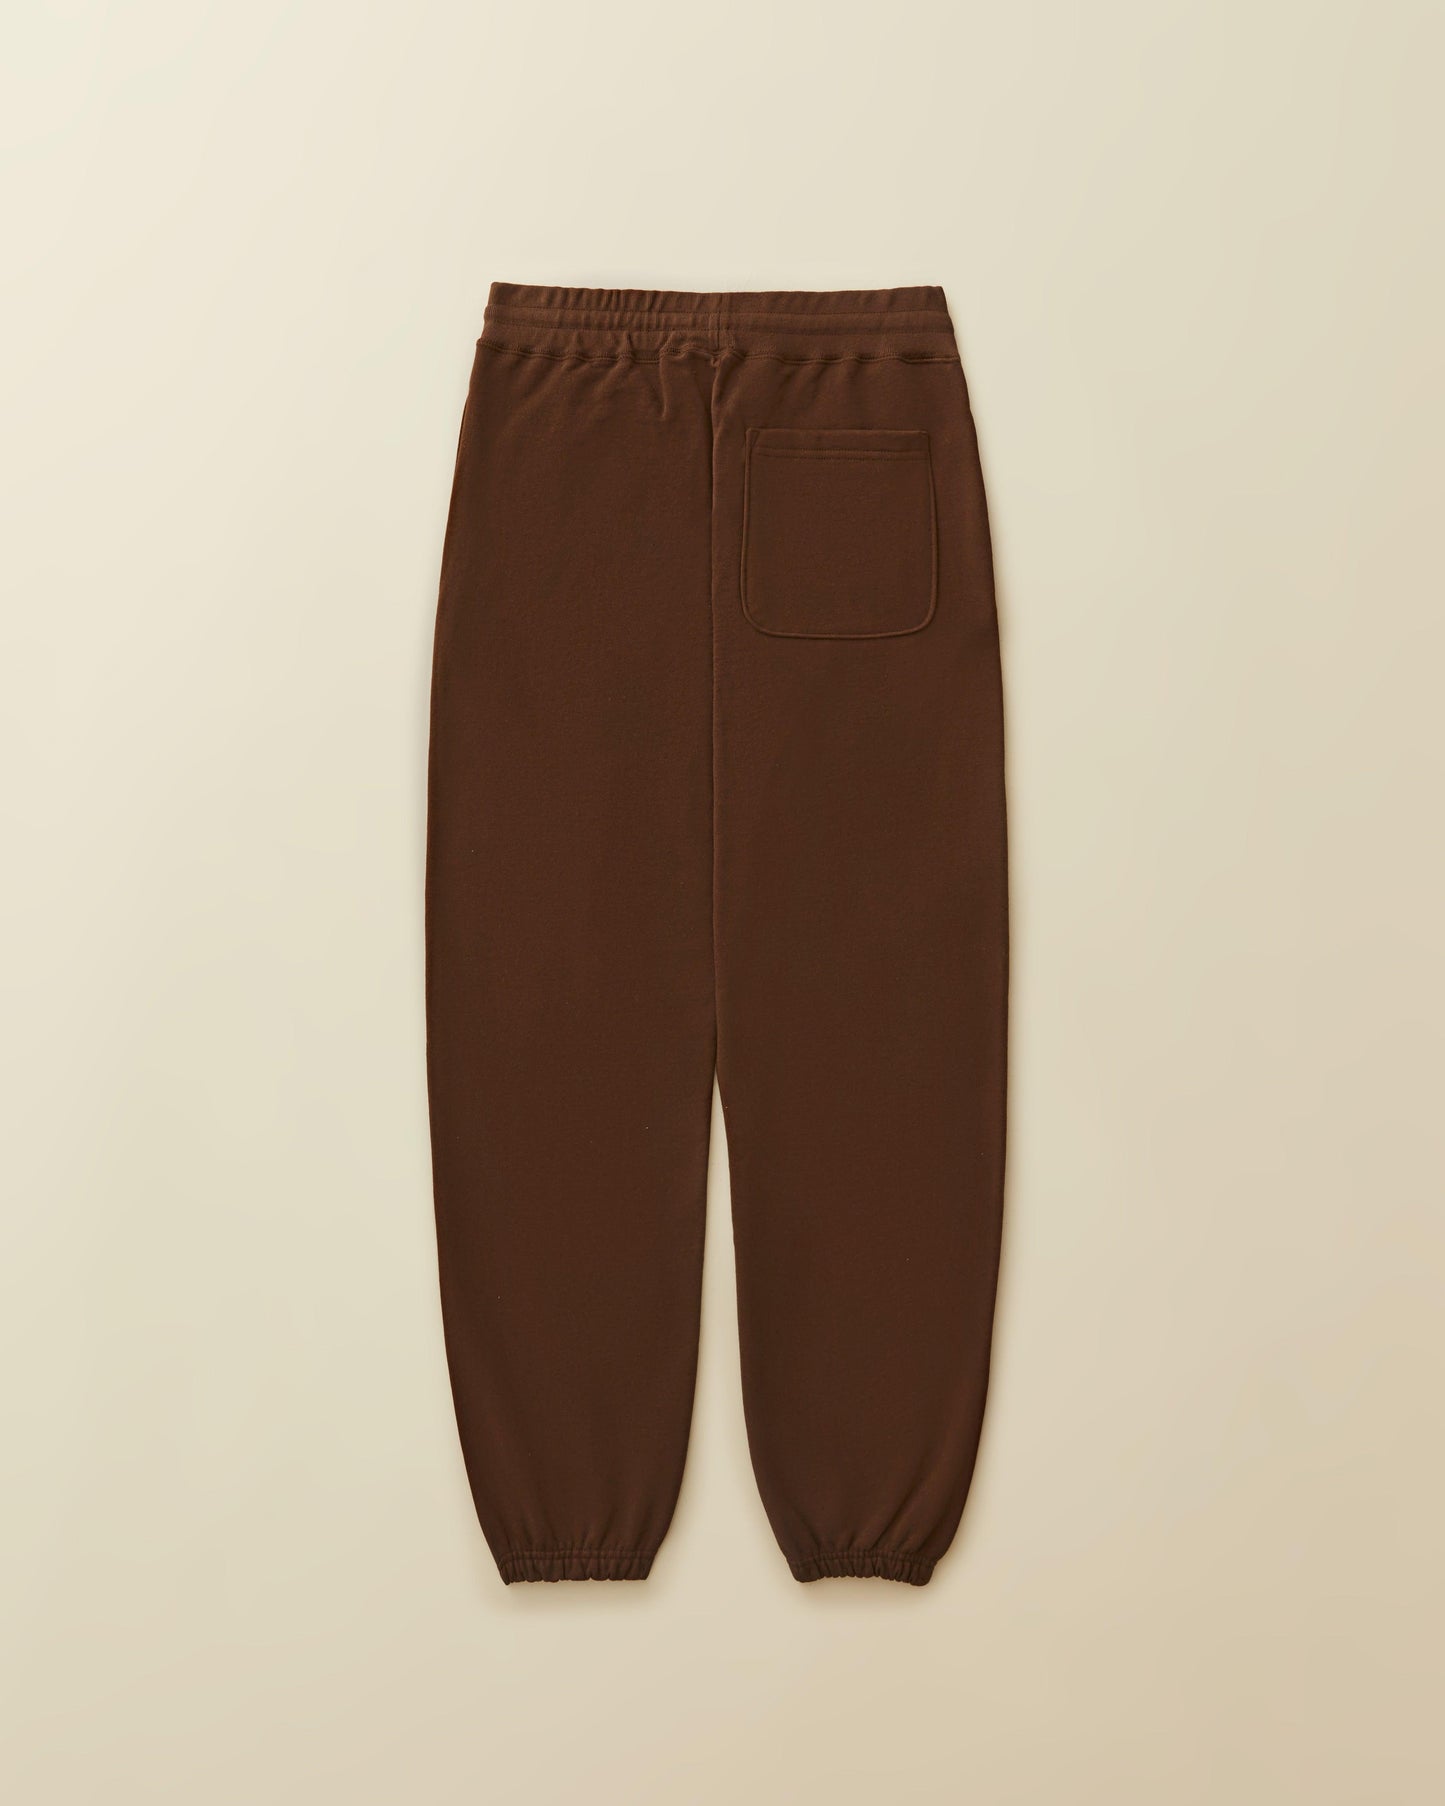 AM Uniform - sweatpants  ( brown )